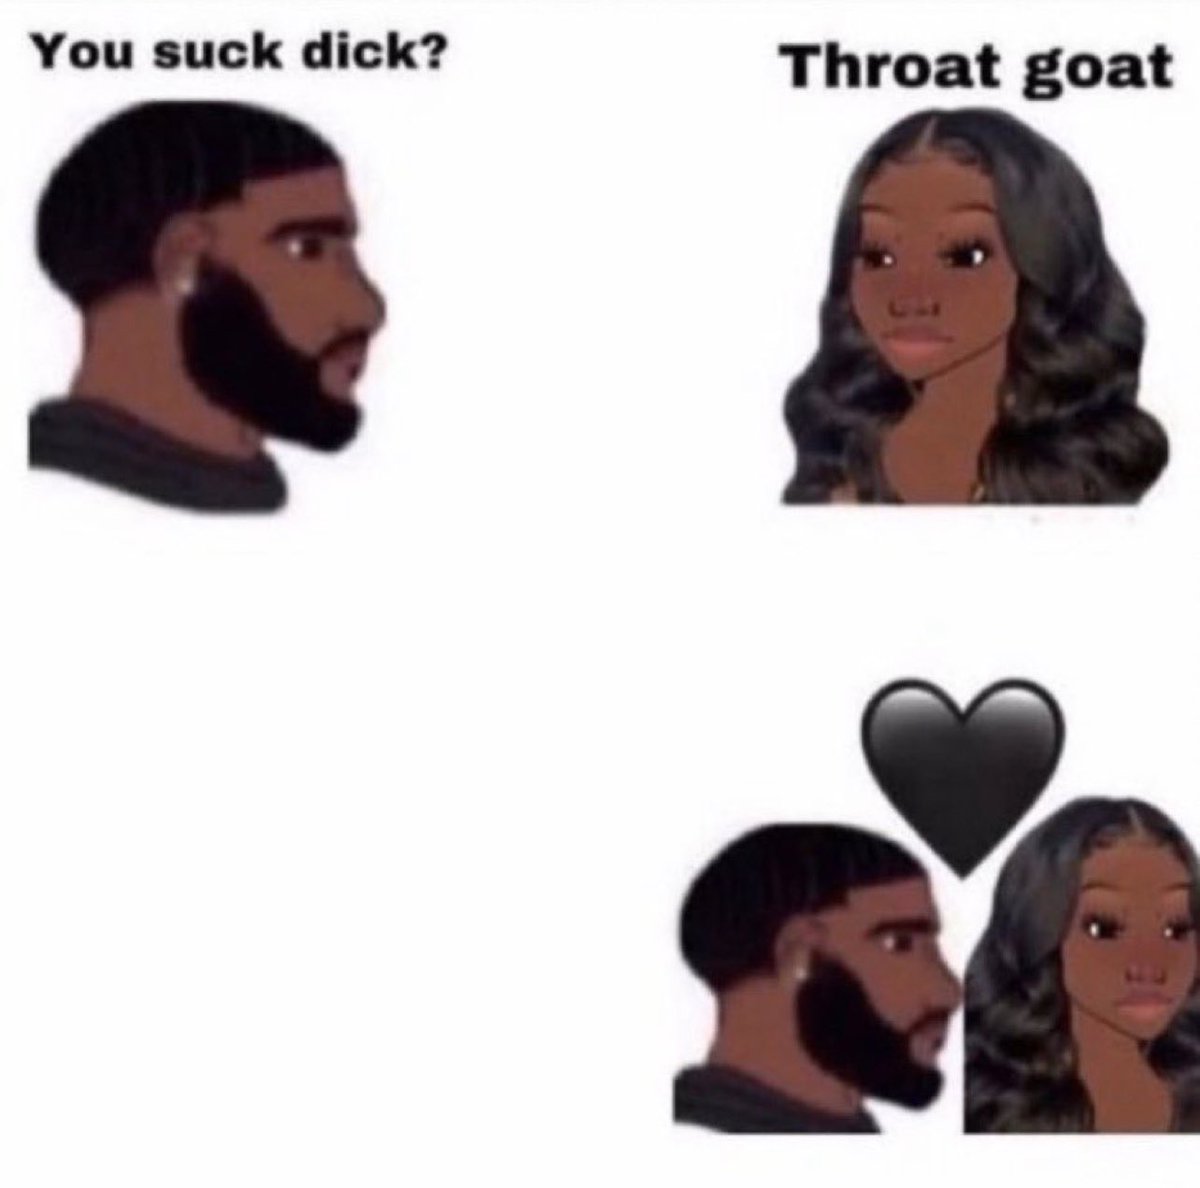 Throat Goat #onlyfans #onlyfansnewbie #onlyfansgirl #onlyfansbabe #meme #memes #sexwork #sexworker